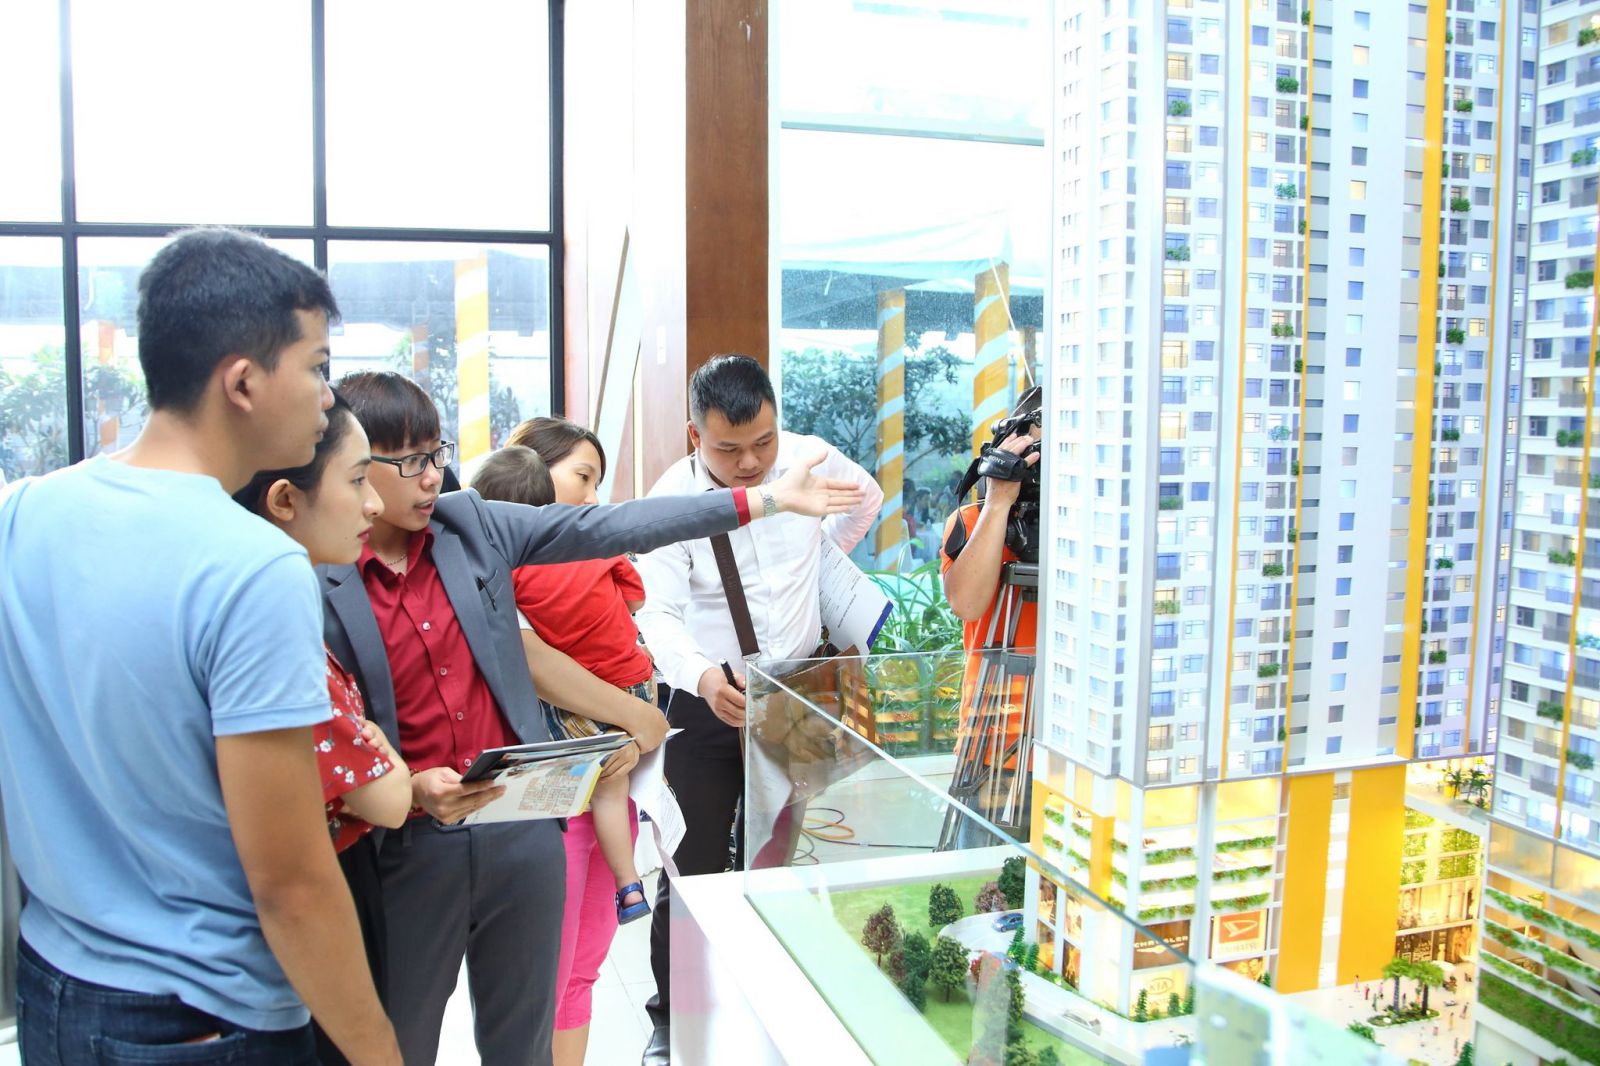 đa số các chung cư mới được đầu tư xây dựng là thuộc phân khúc trung cấp với giá bán dao động từ 30 đến trên 40 triệu đồng một m2.